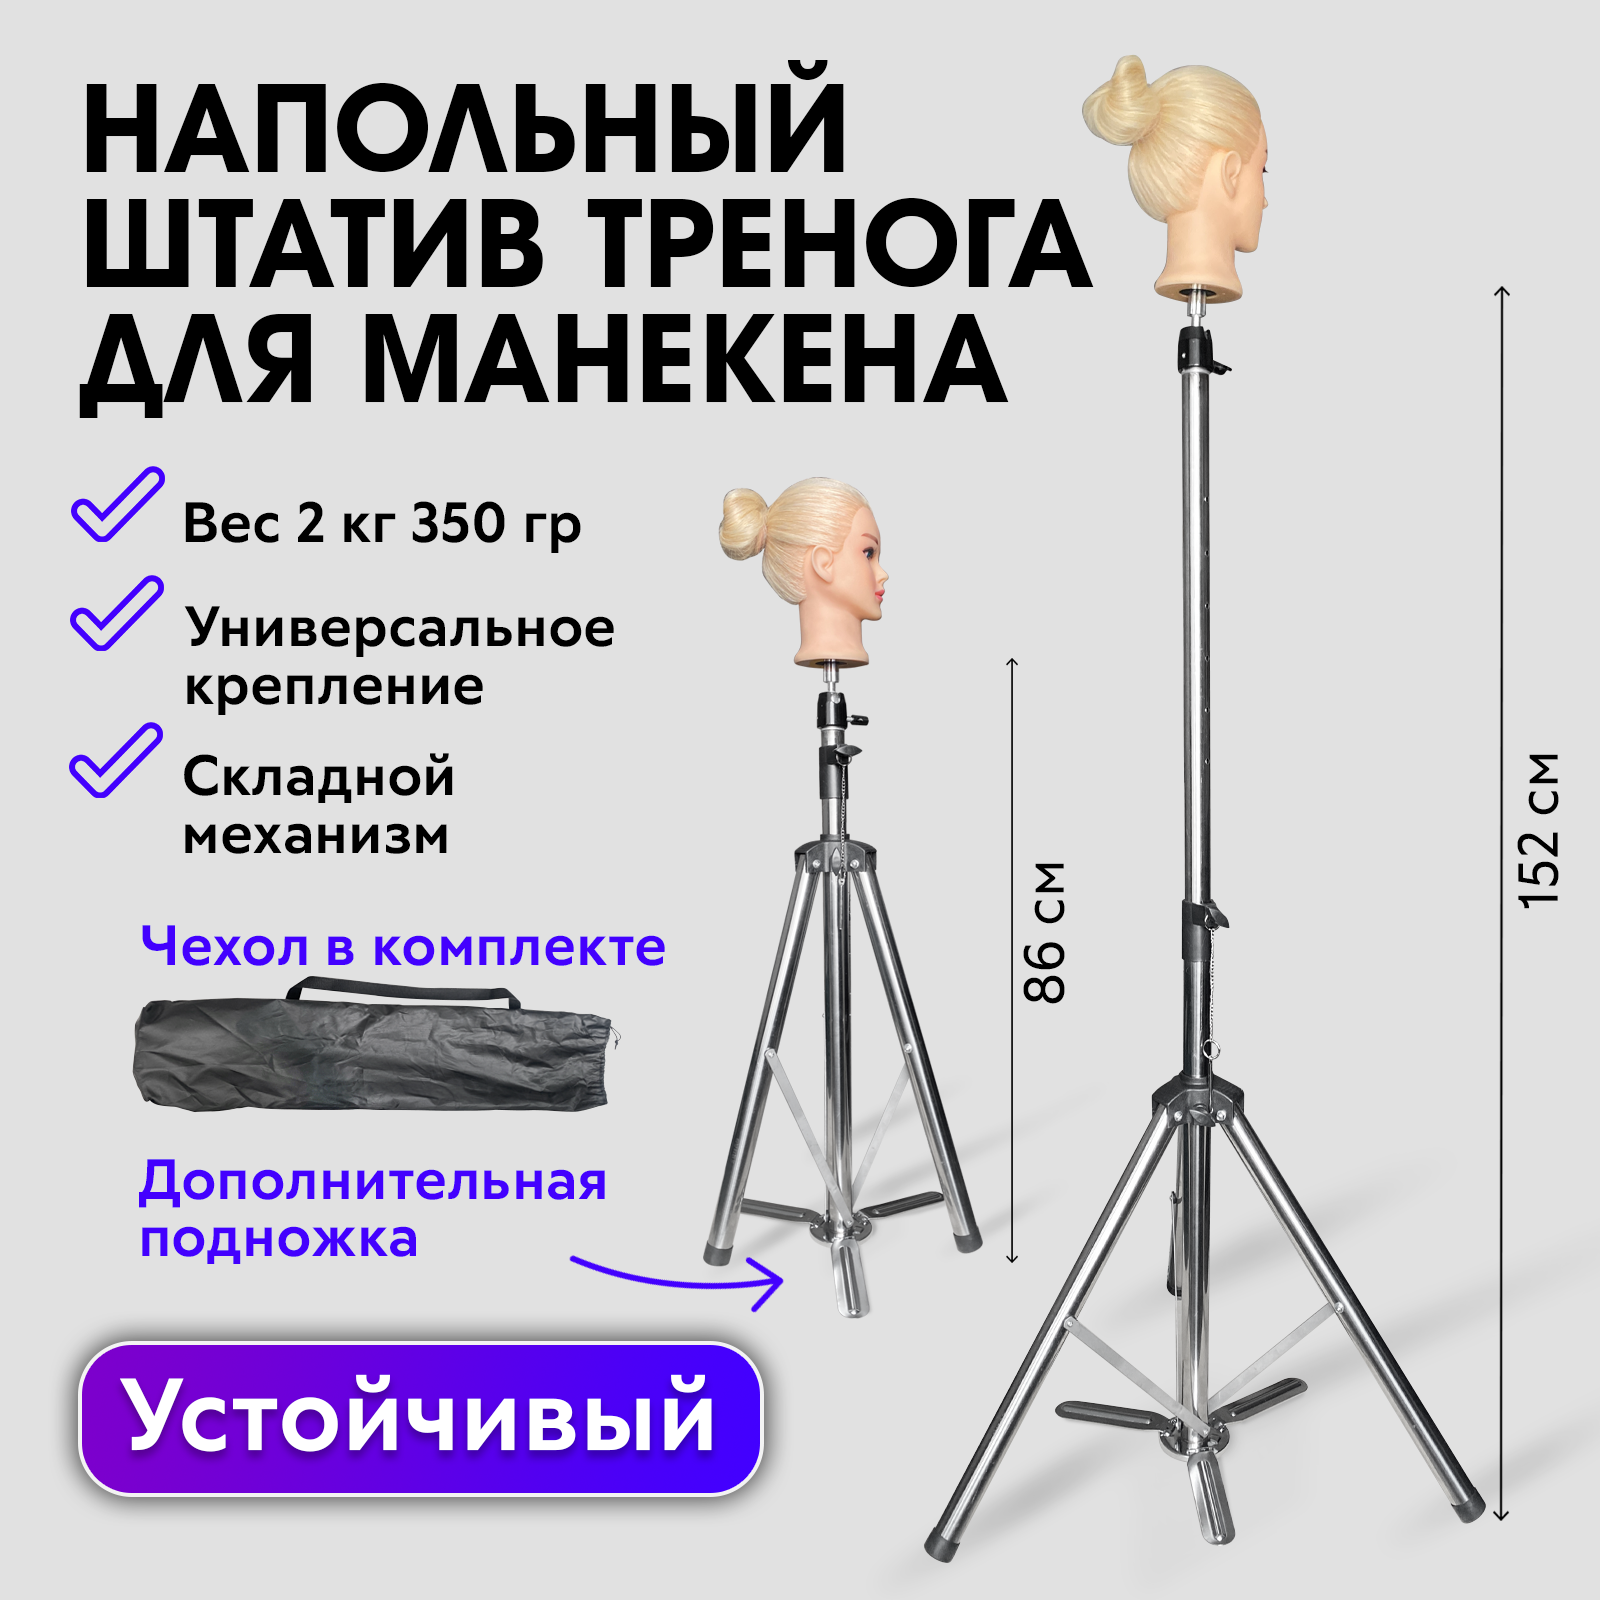 Напольный штатив для учебной головы манекена Charites гибкий держатель gds 38 man c 1 быстросъемным креплением для учебной головы манекена